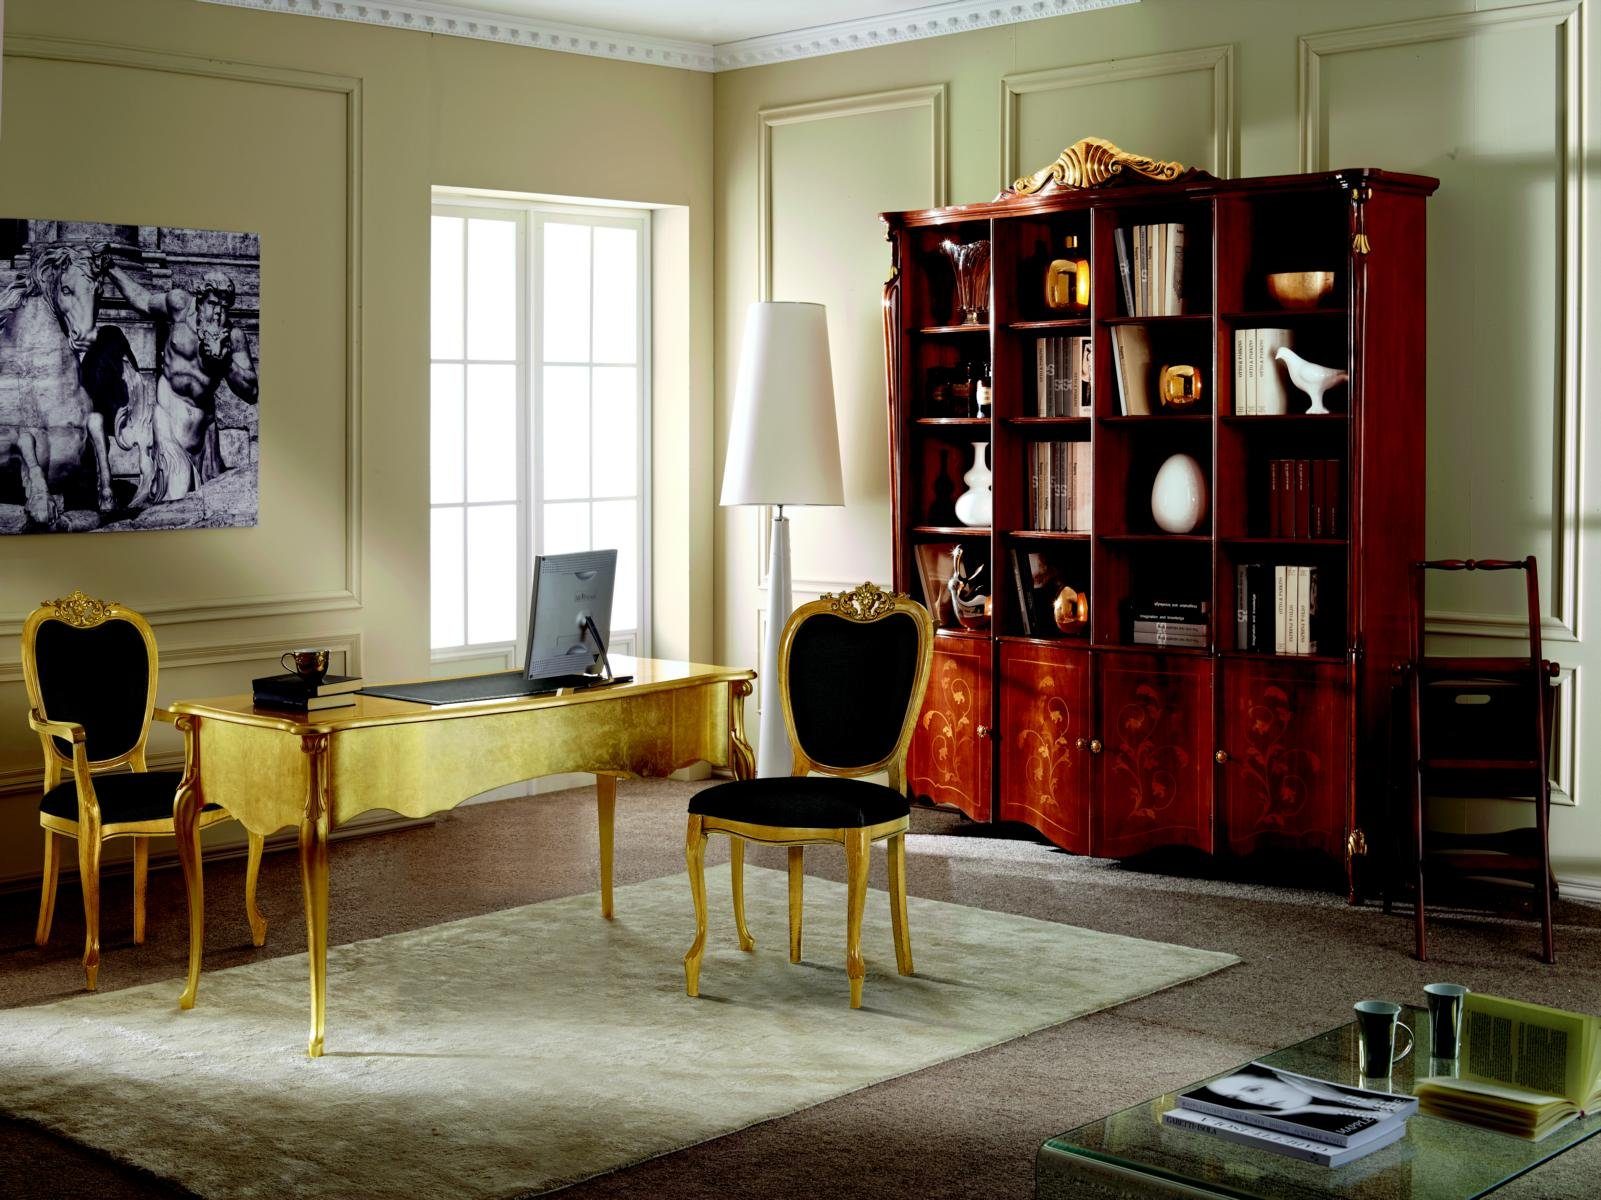 JVmoebel Bücherwand Möbel Klassischer Stil Luxus Schrank Bücherschrank Barock Möbel Italien Stil